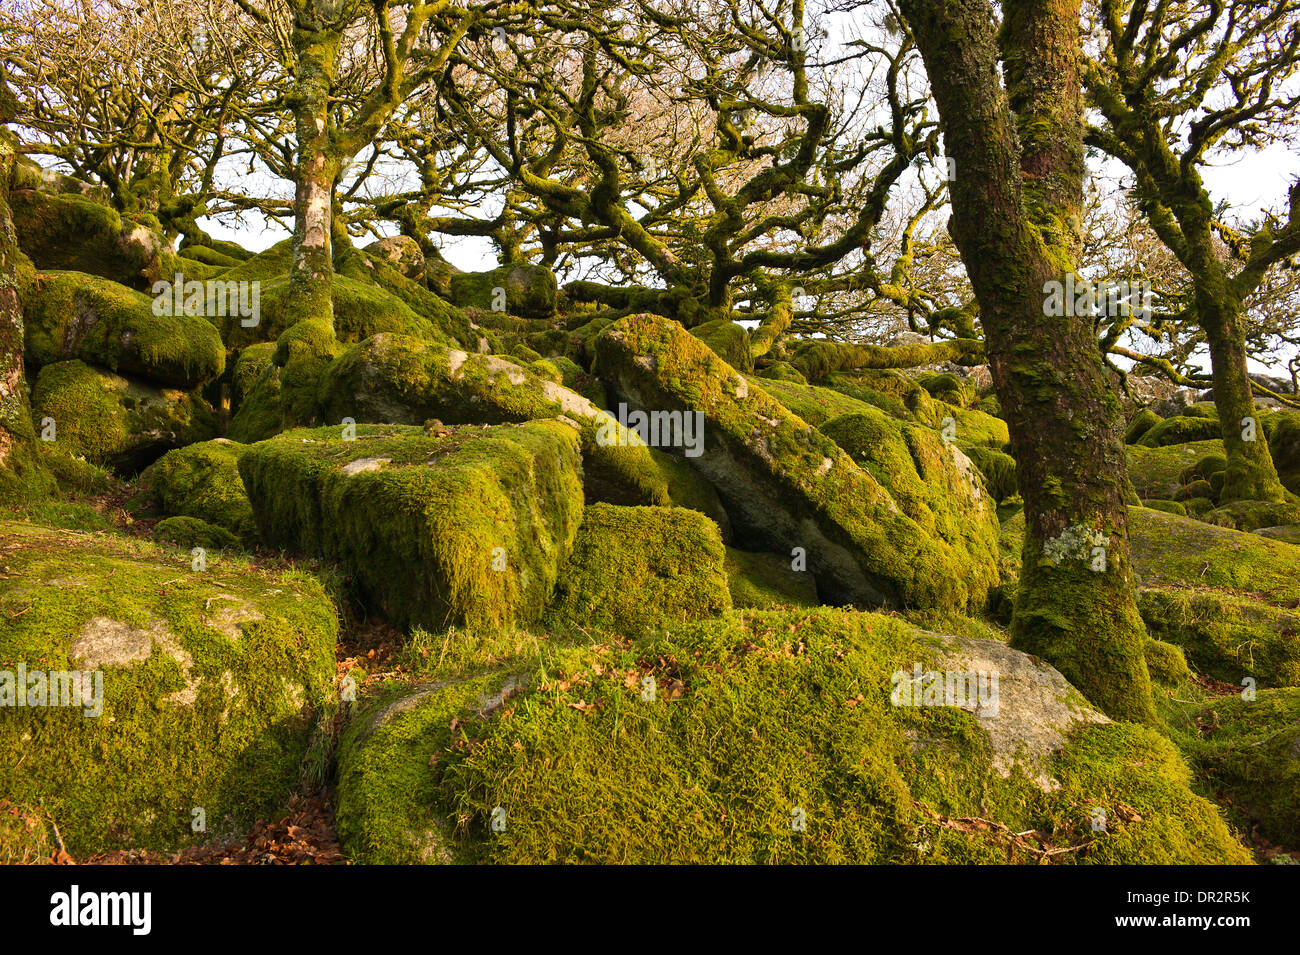 Wistman il legno, un altopiano antico legno di quercia, West Dart River Valley, Dartmoor Devon. Farnia alberi, massi di granito Foto Stock